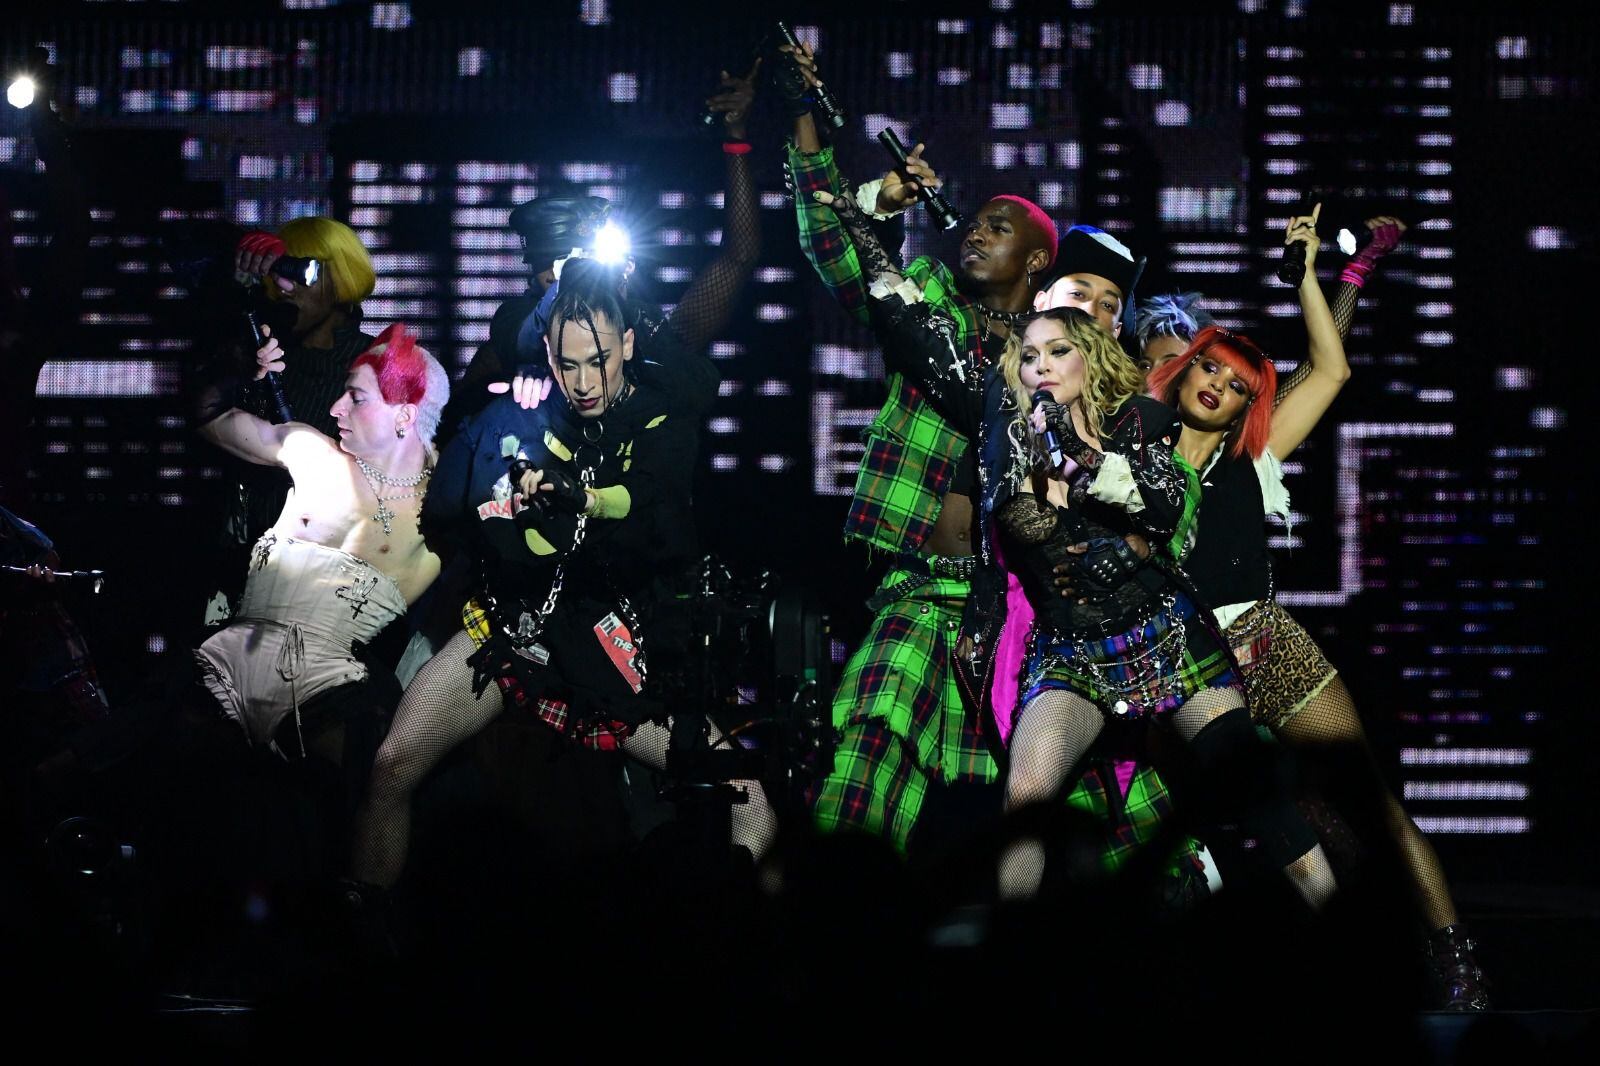 El histórico concierto de Madonna en Copacabana, Brasil.